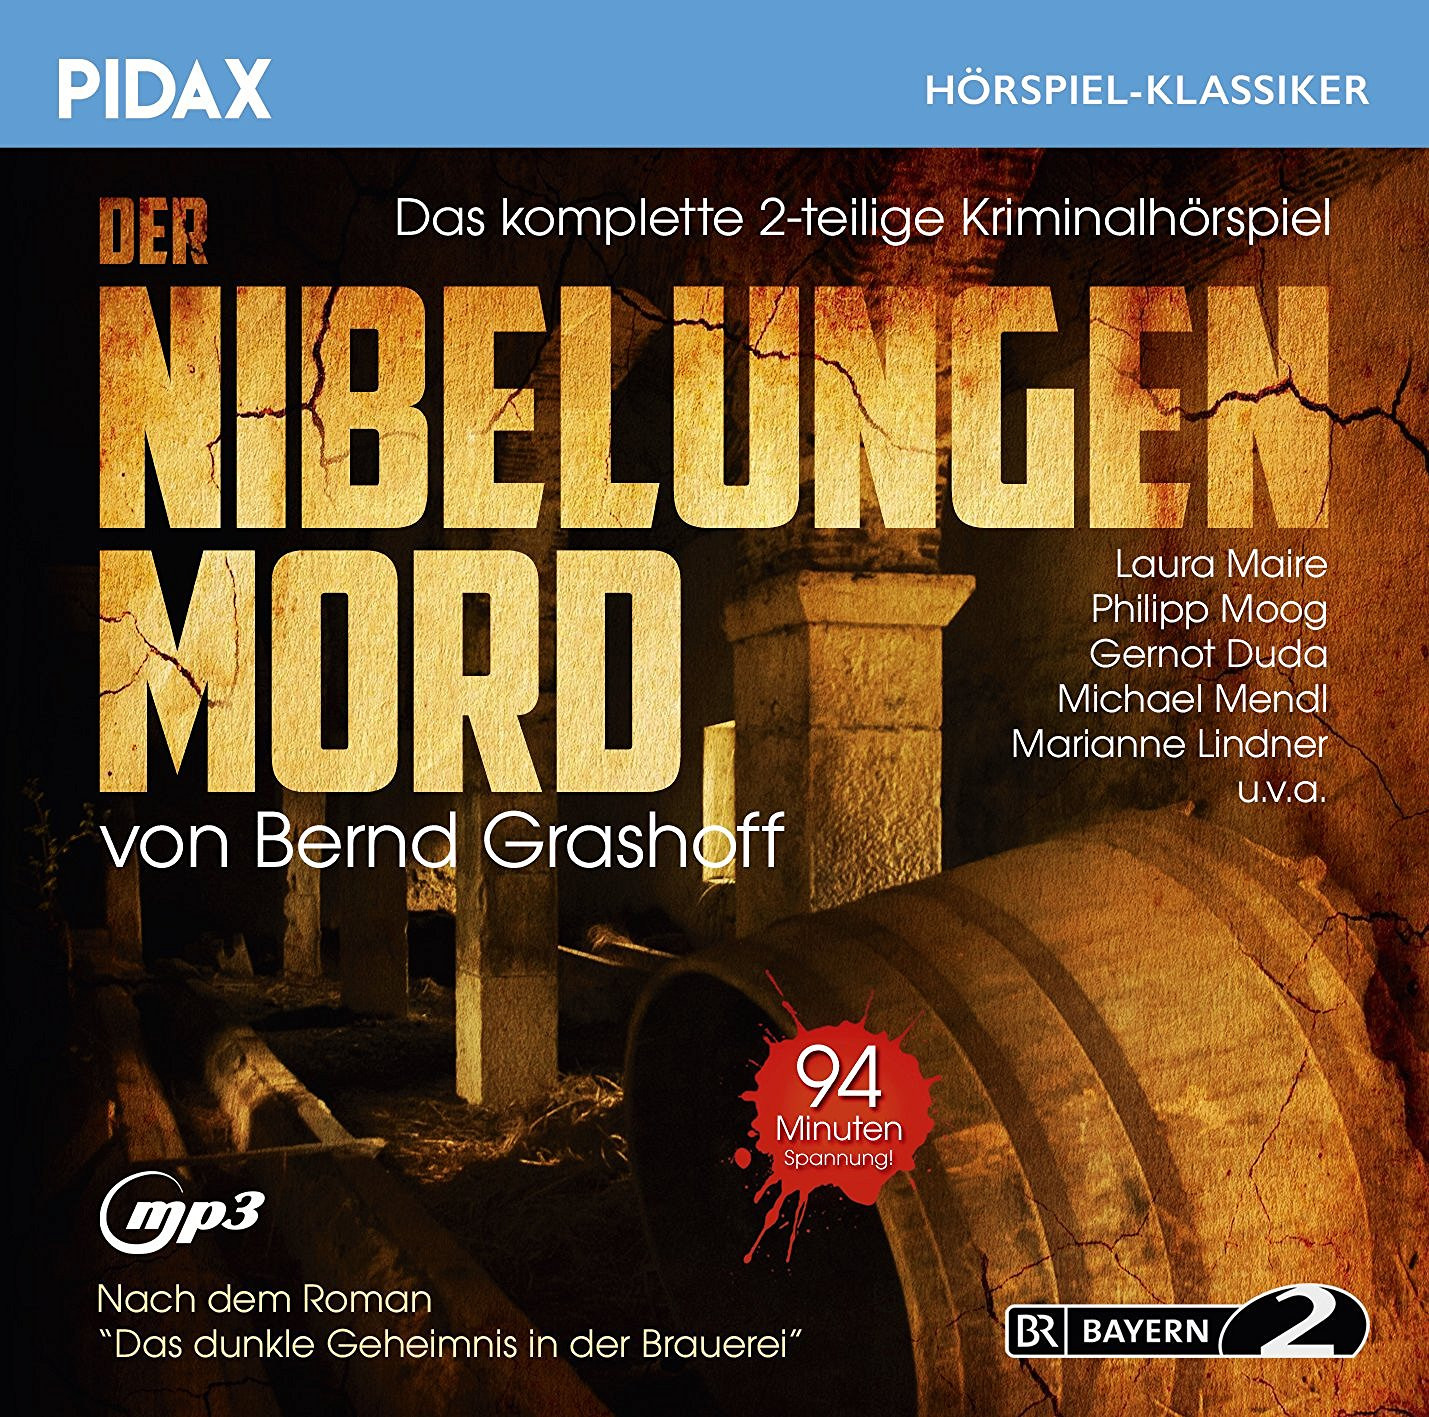 Pidax Hörspiel Klassiker - Der Nibelungen Mord